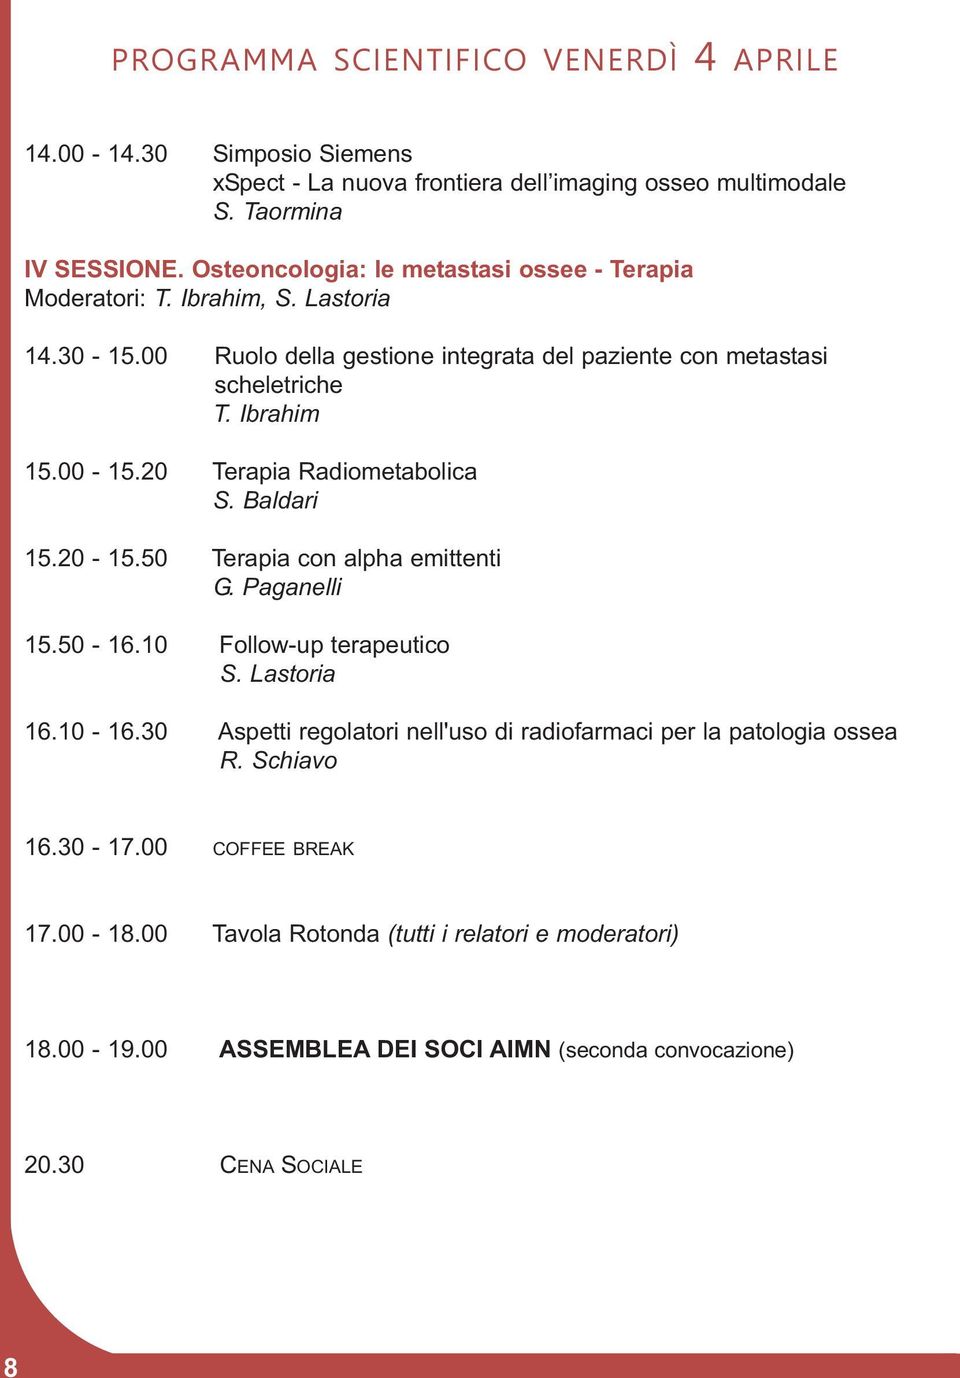 00-15.20 Terapia Radiometabolica S. Baldari 15.20-15.50 Terapia con alpha emittenti G. Paganelli 15.50-16.10 Follow-up terapeutico S. Lastoria 16.10-16.